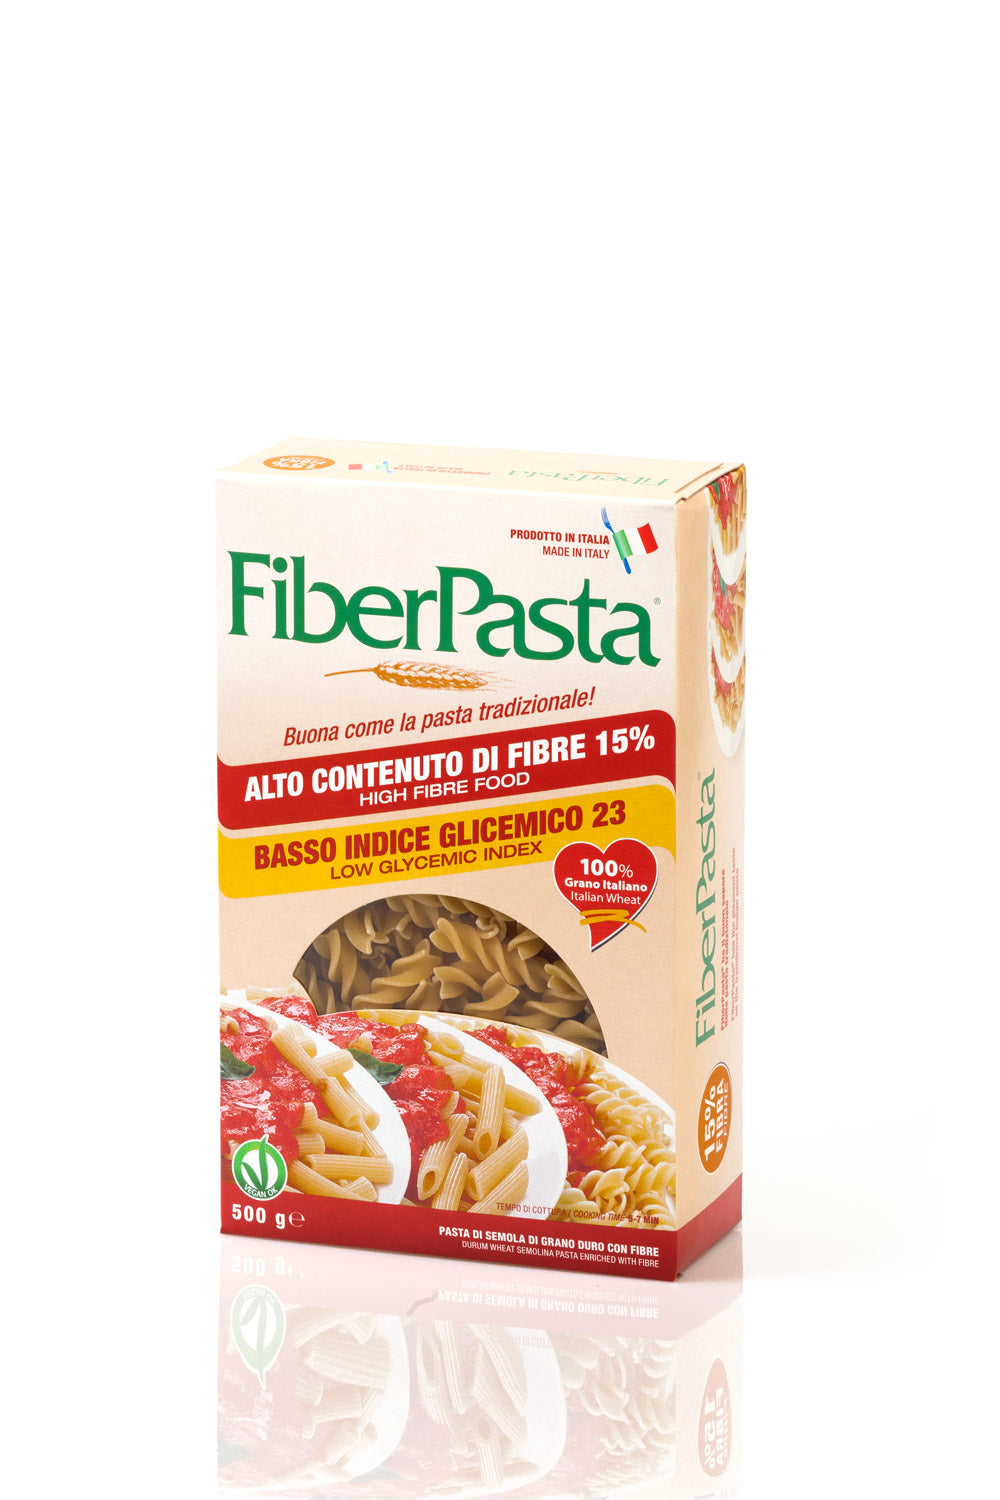 Pasta a basso indice glicemico e ad alto contenuto di fibre - pacchetto iniziale (oS)